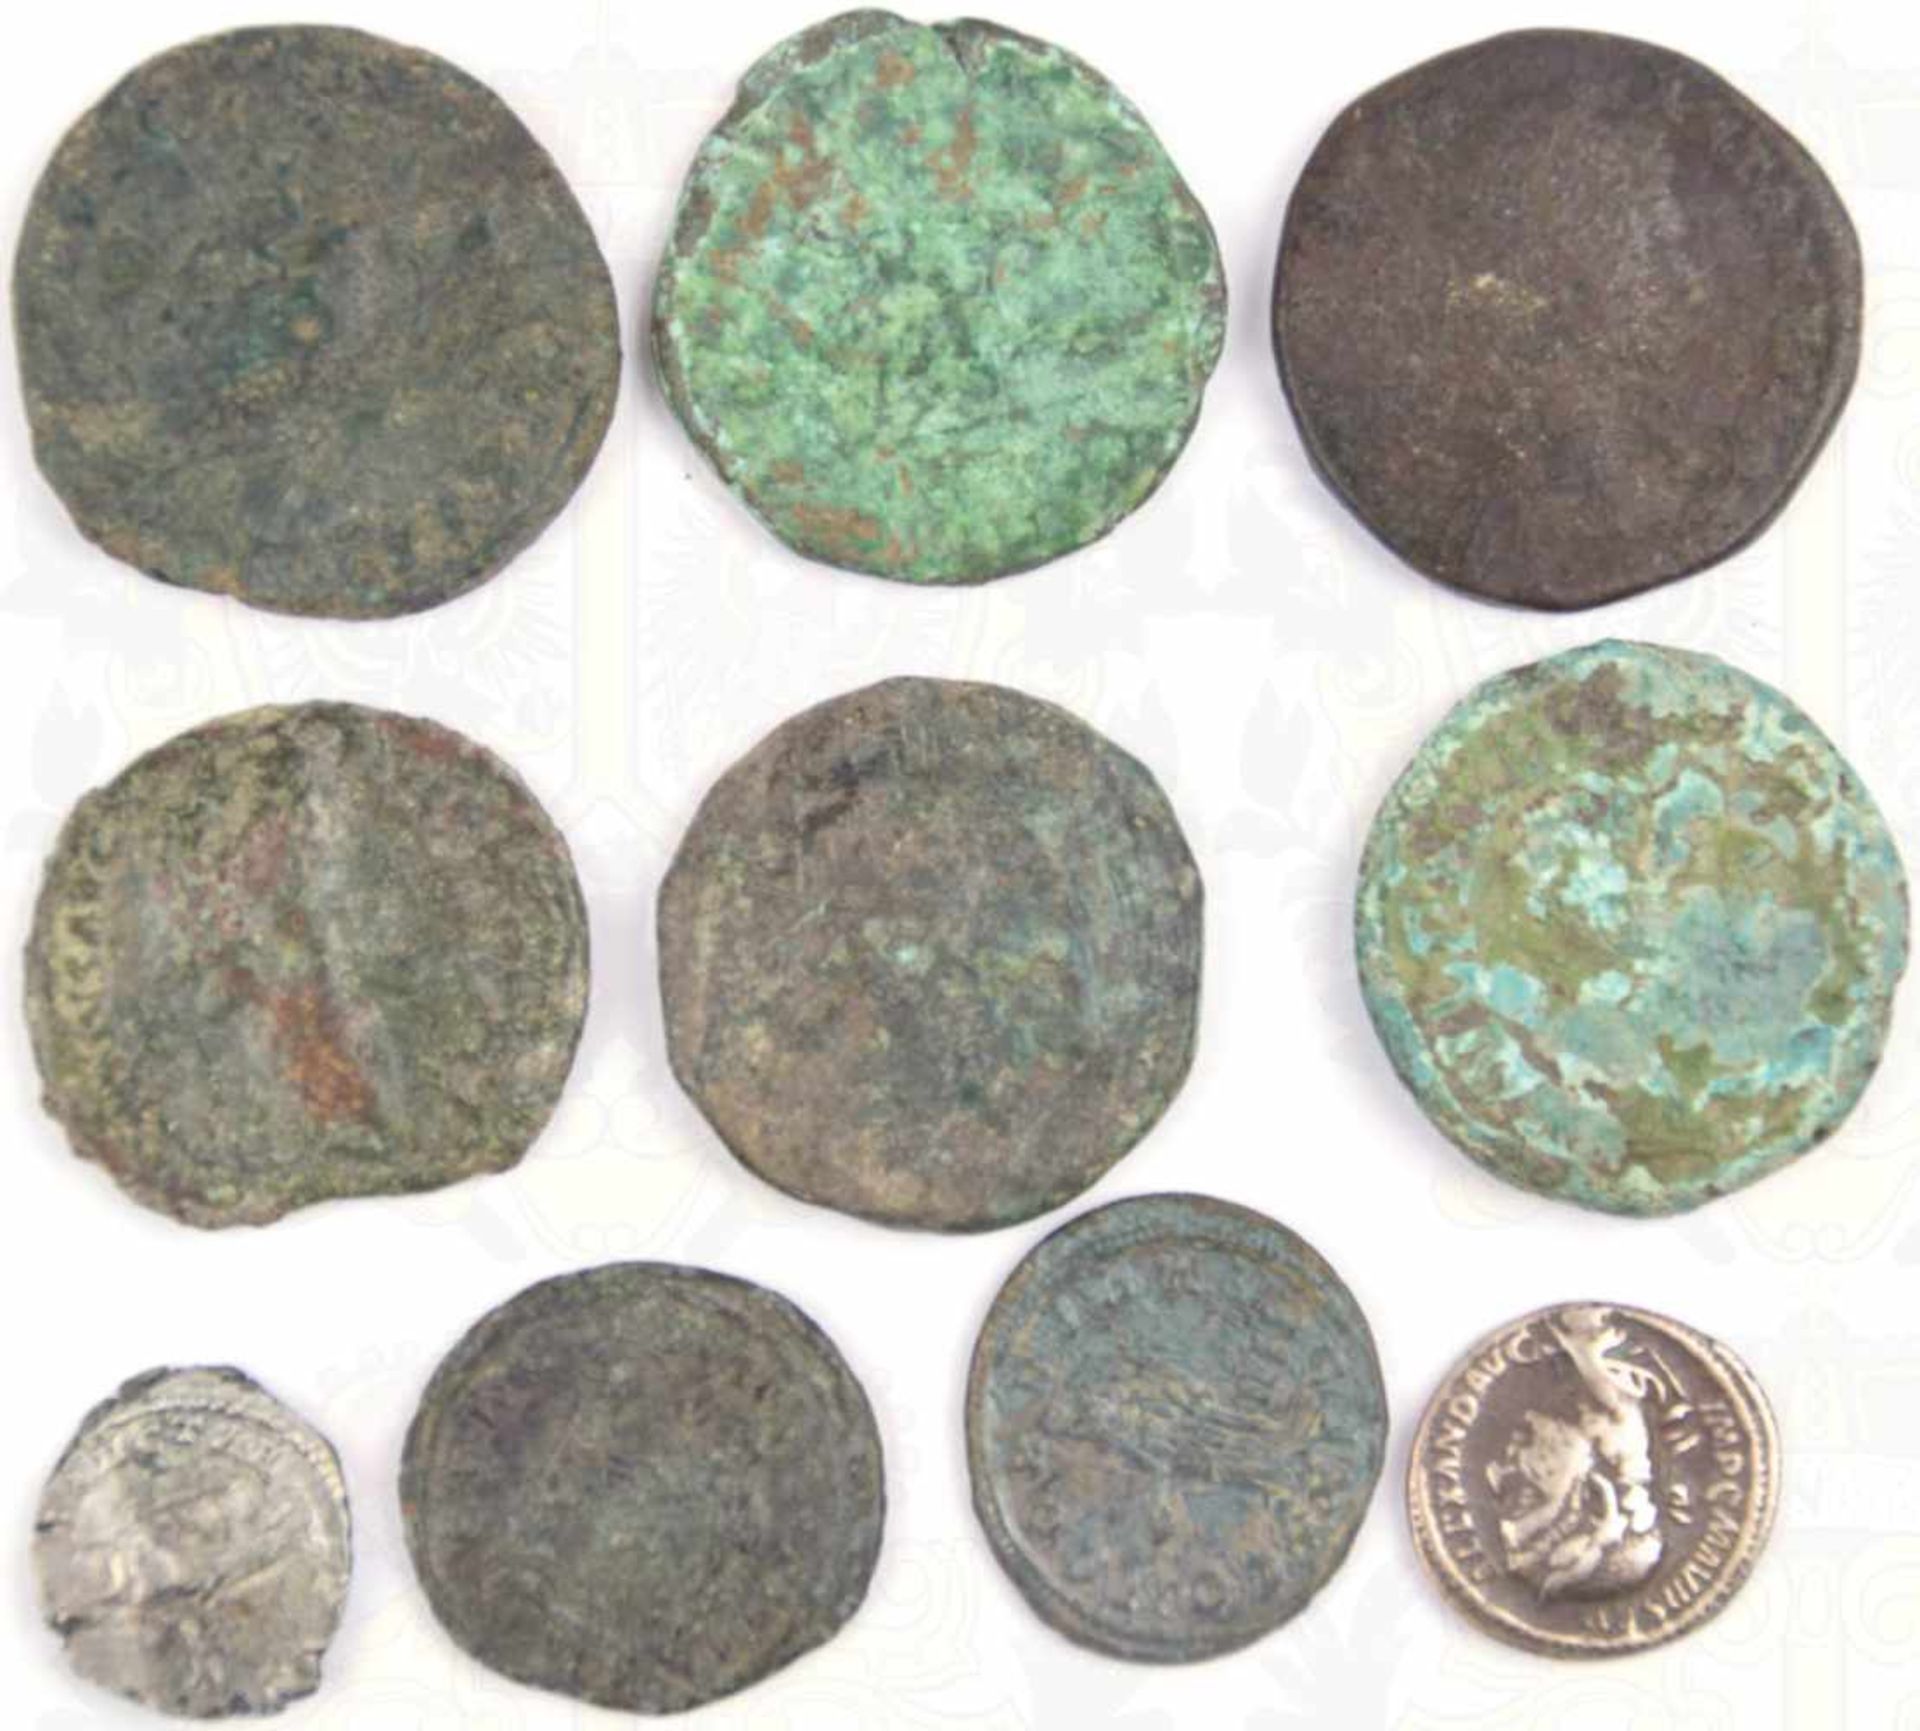 10 KLEINMÜNZEN, gereinigte Bodenfunde, meist römisch, 8 Bronze, 2 Silber, versch. Kaiserportraits,